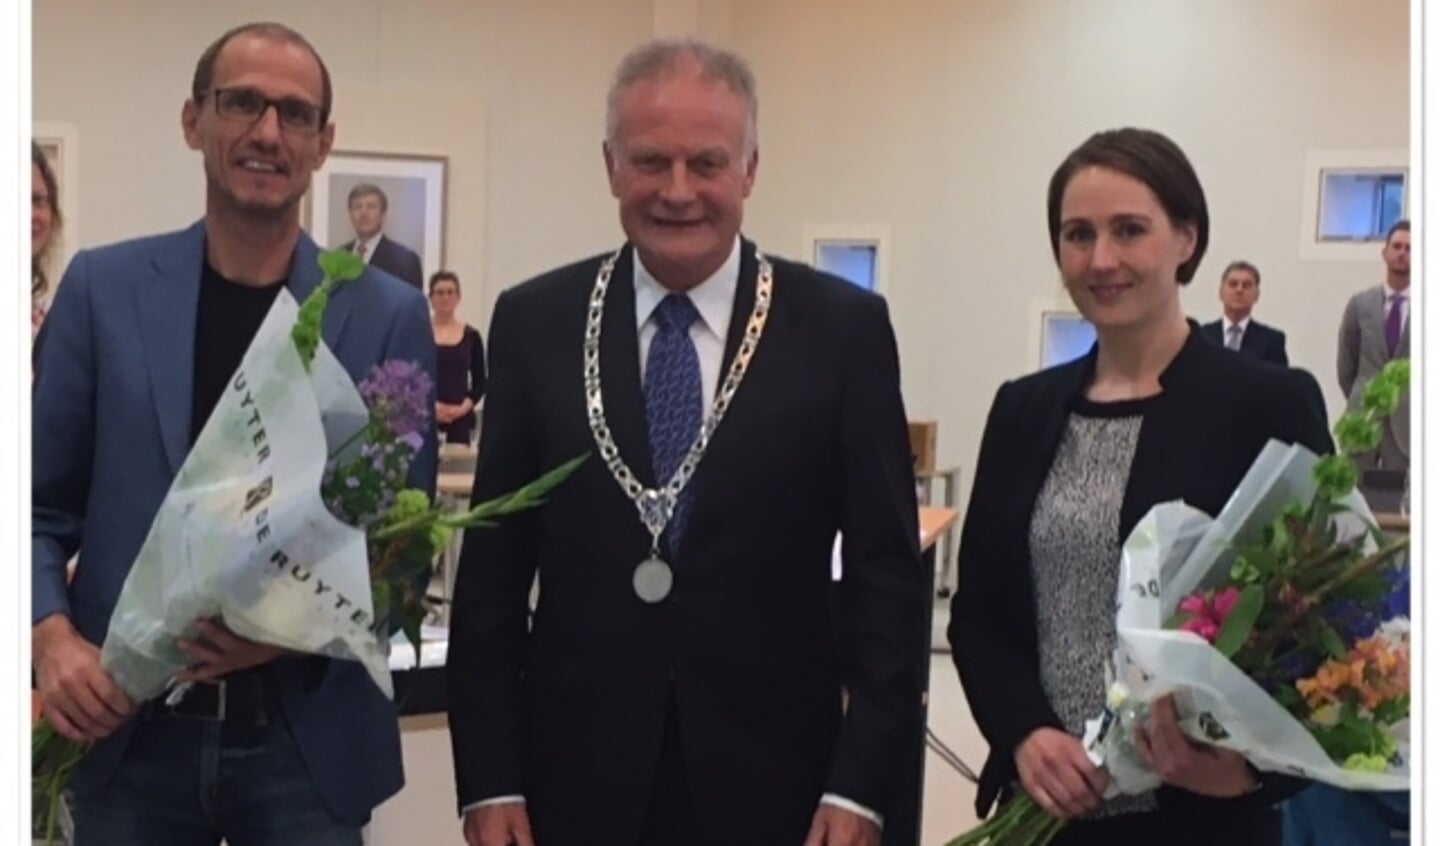 VVD'ers Frank Hermans en Brandy de Groot samen met burgemeester Sicko Heldoorn.